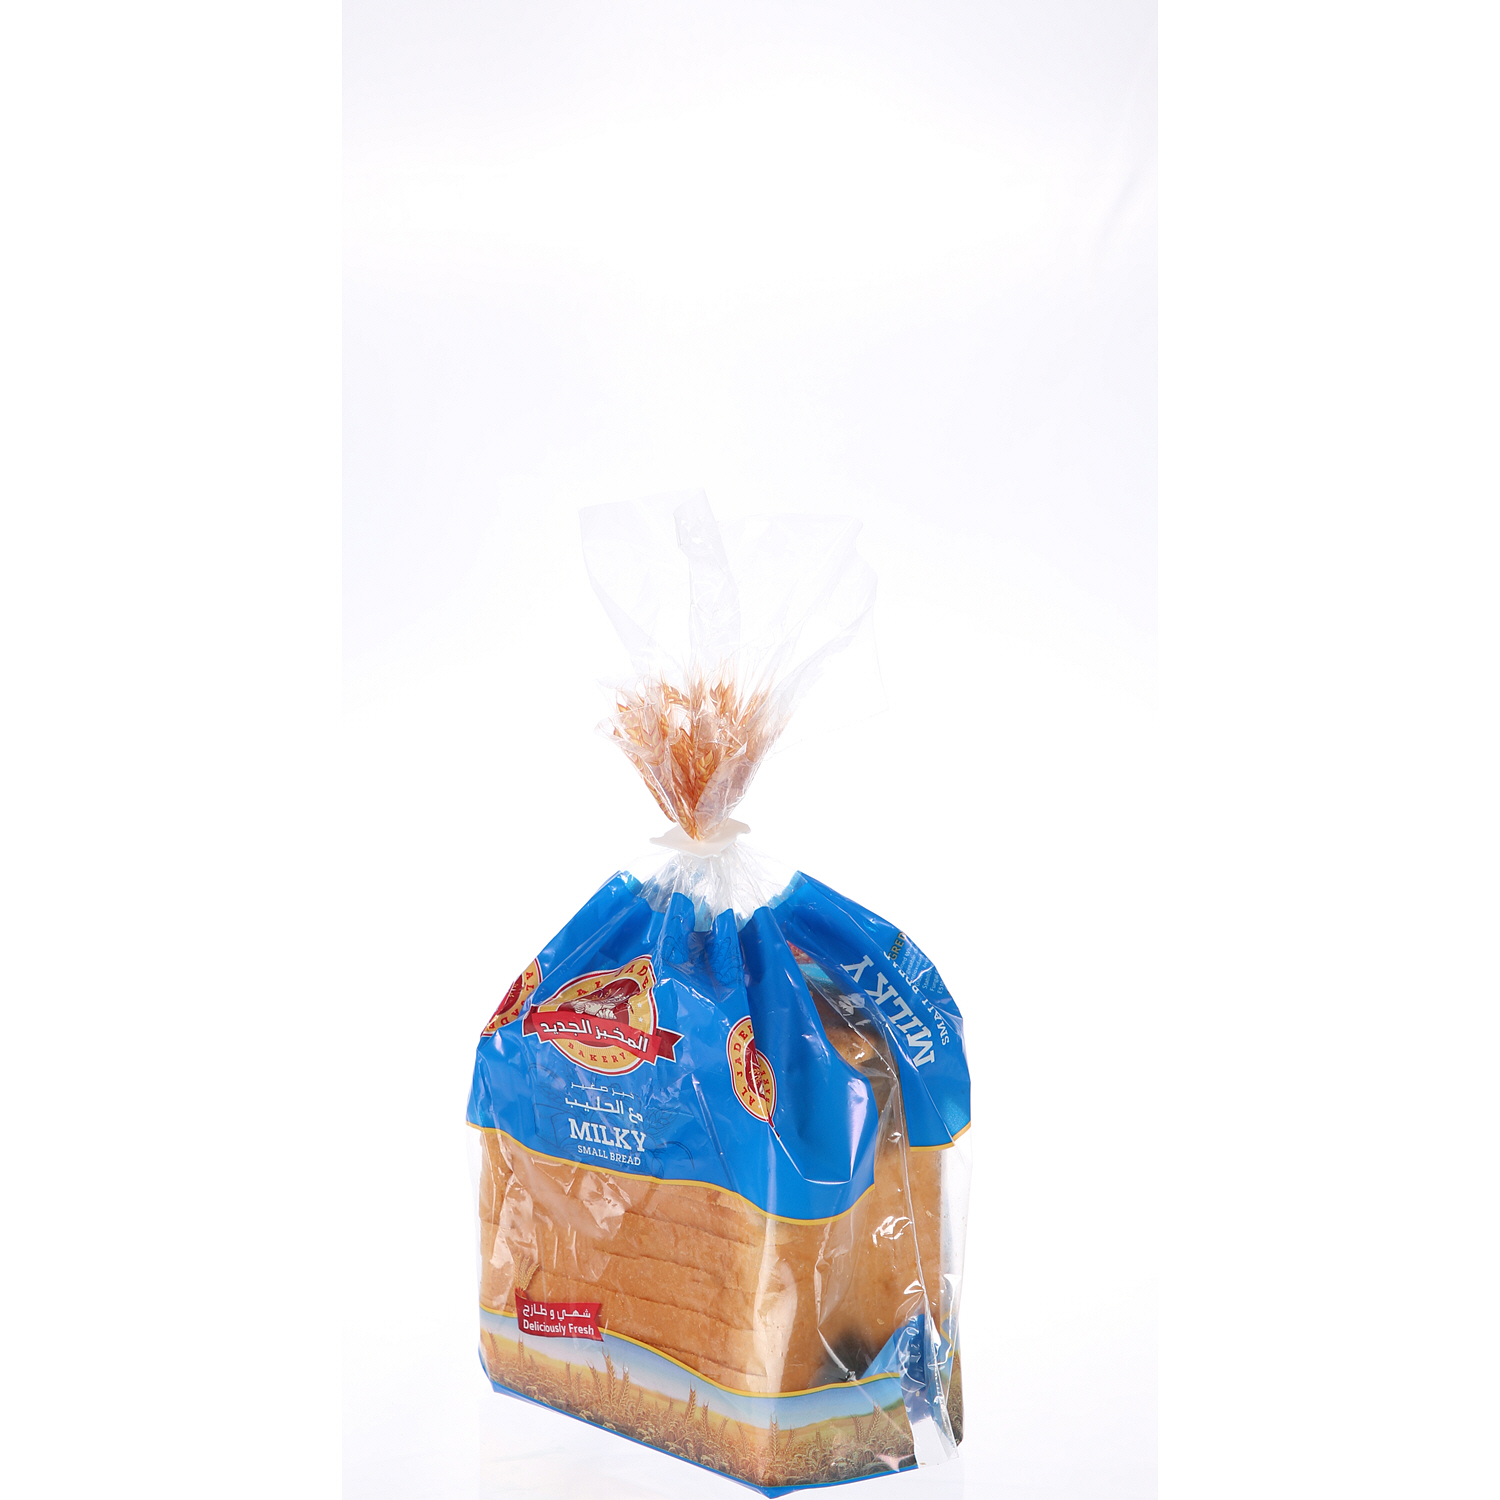 المخبز الجديد شرائح خبز بالحليب صغير 260 ج